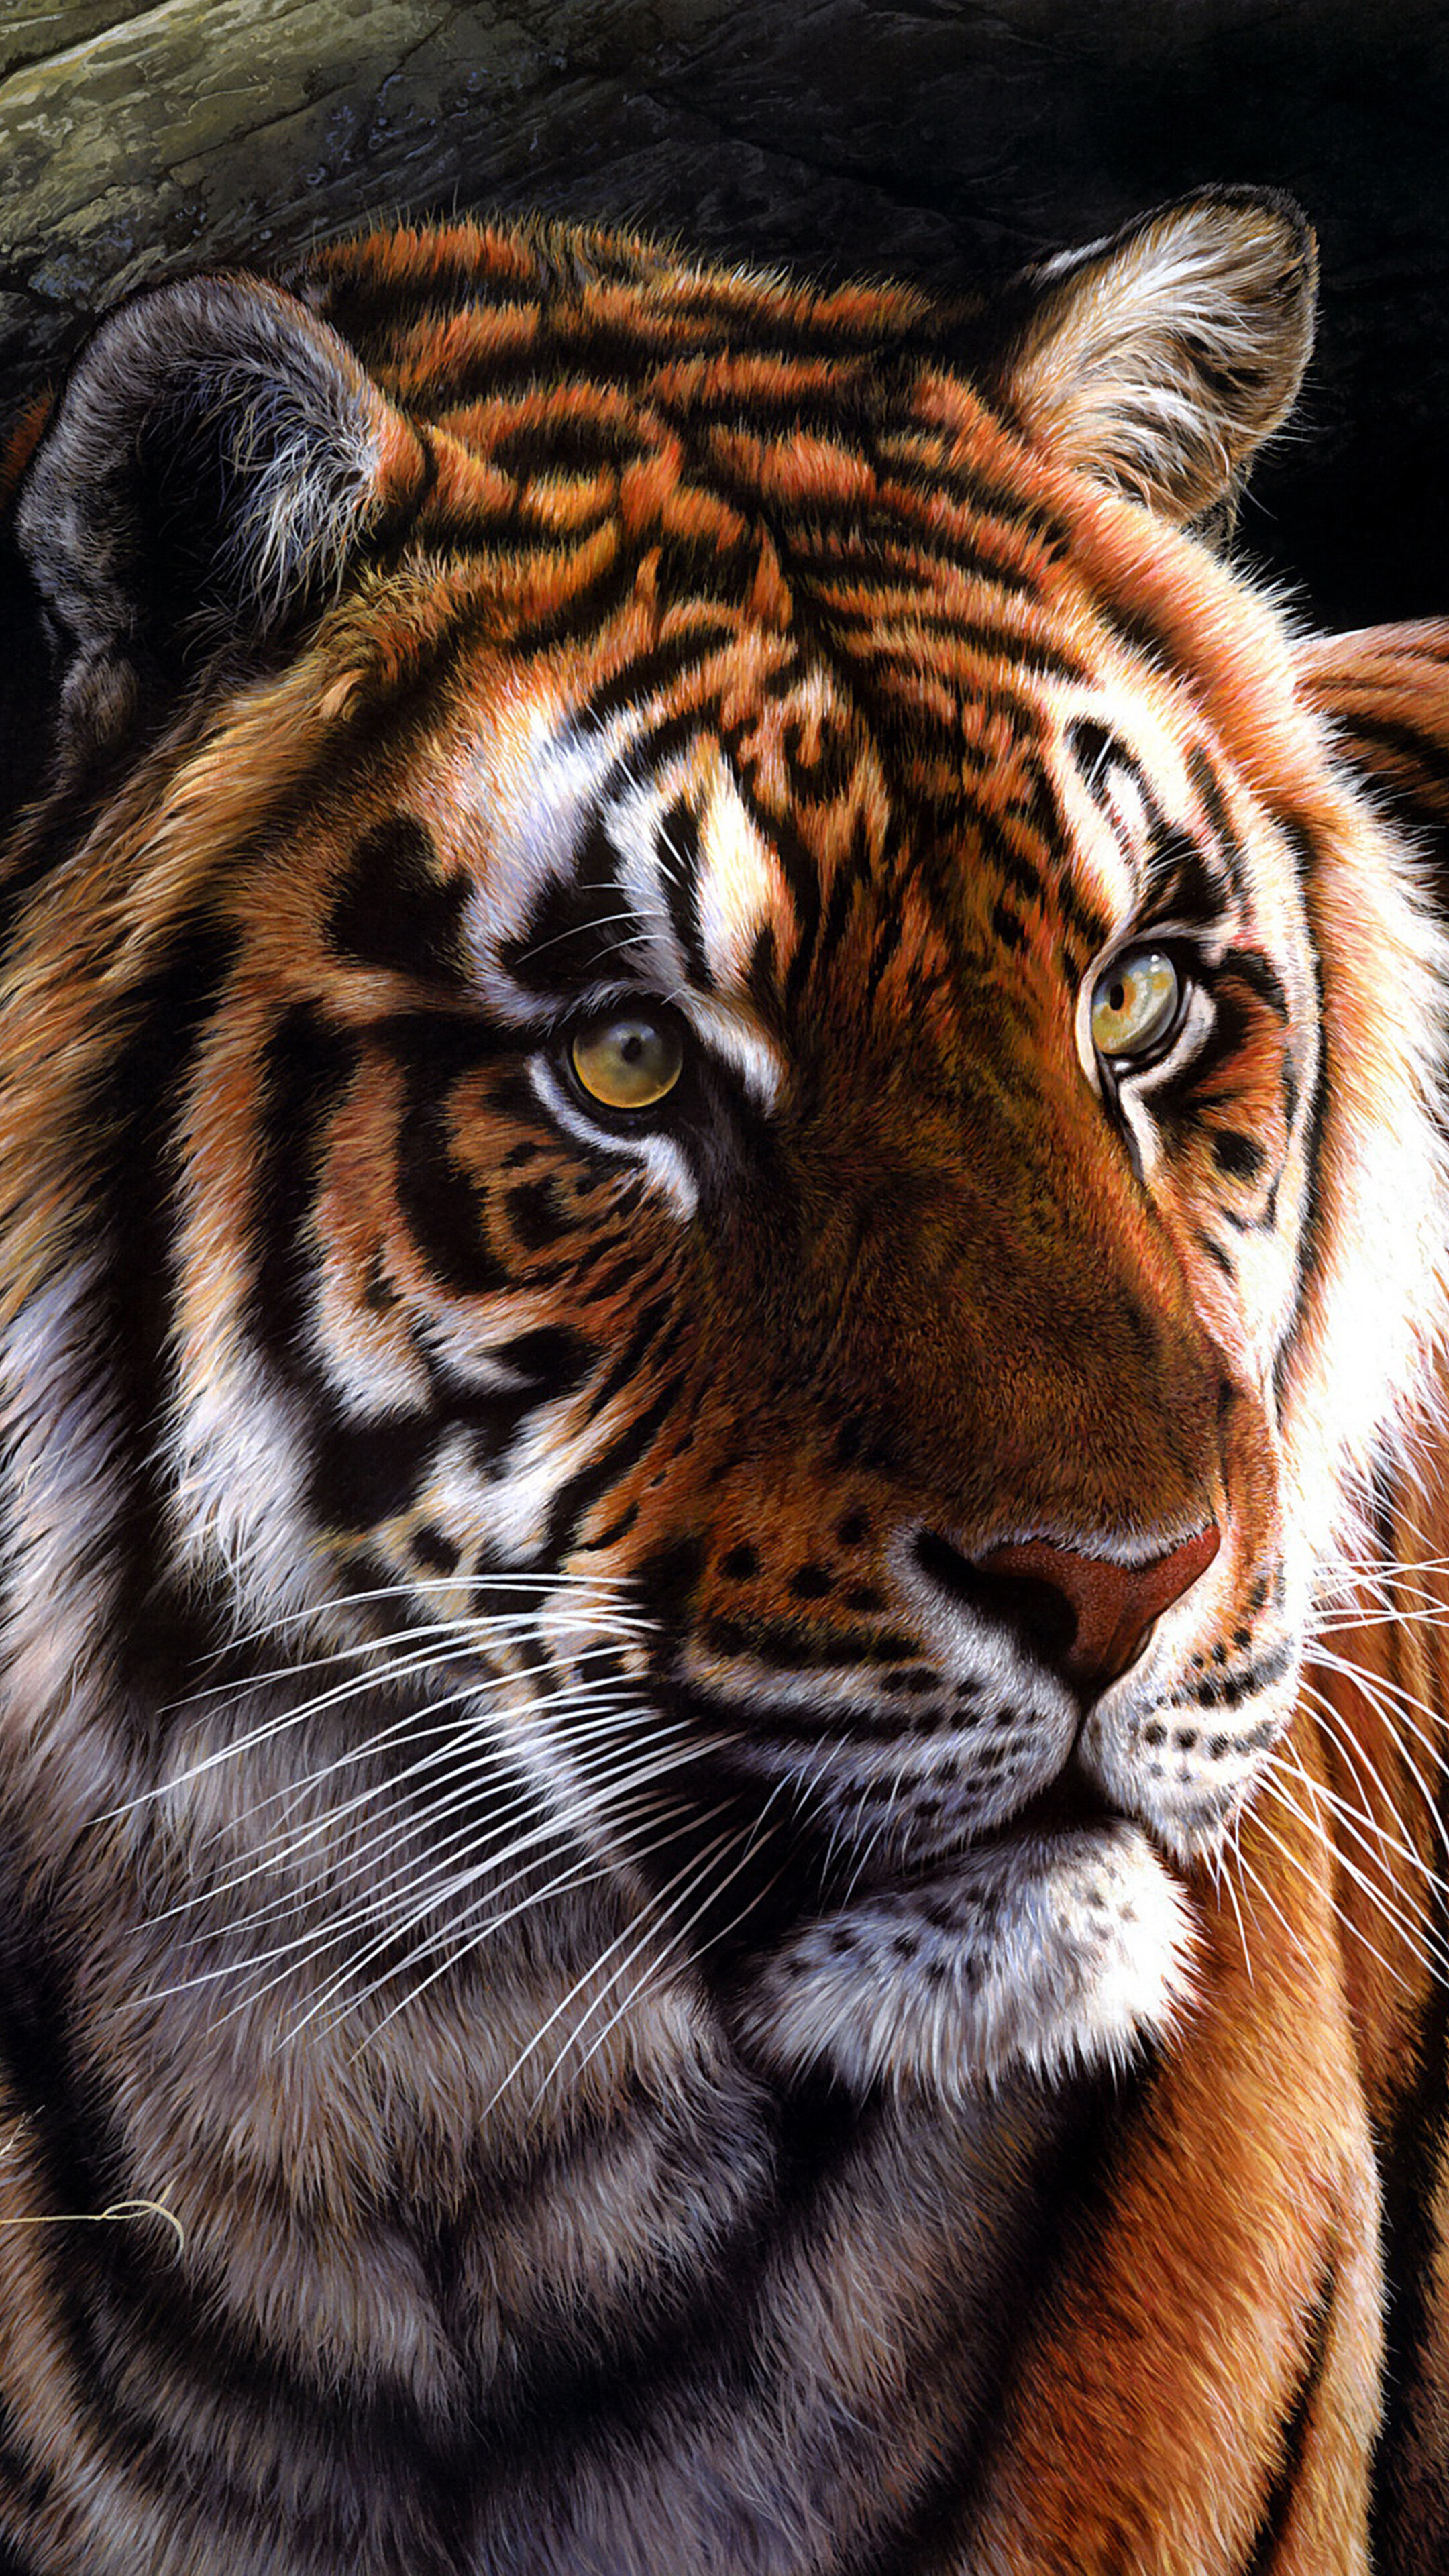 Tiger Art 4k Wallpaper